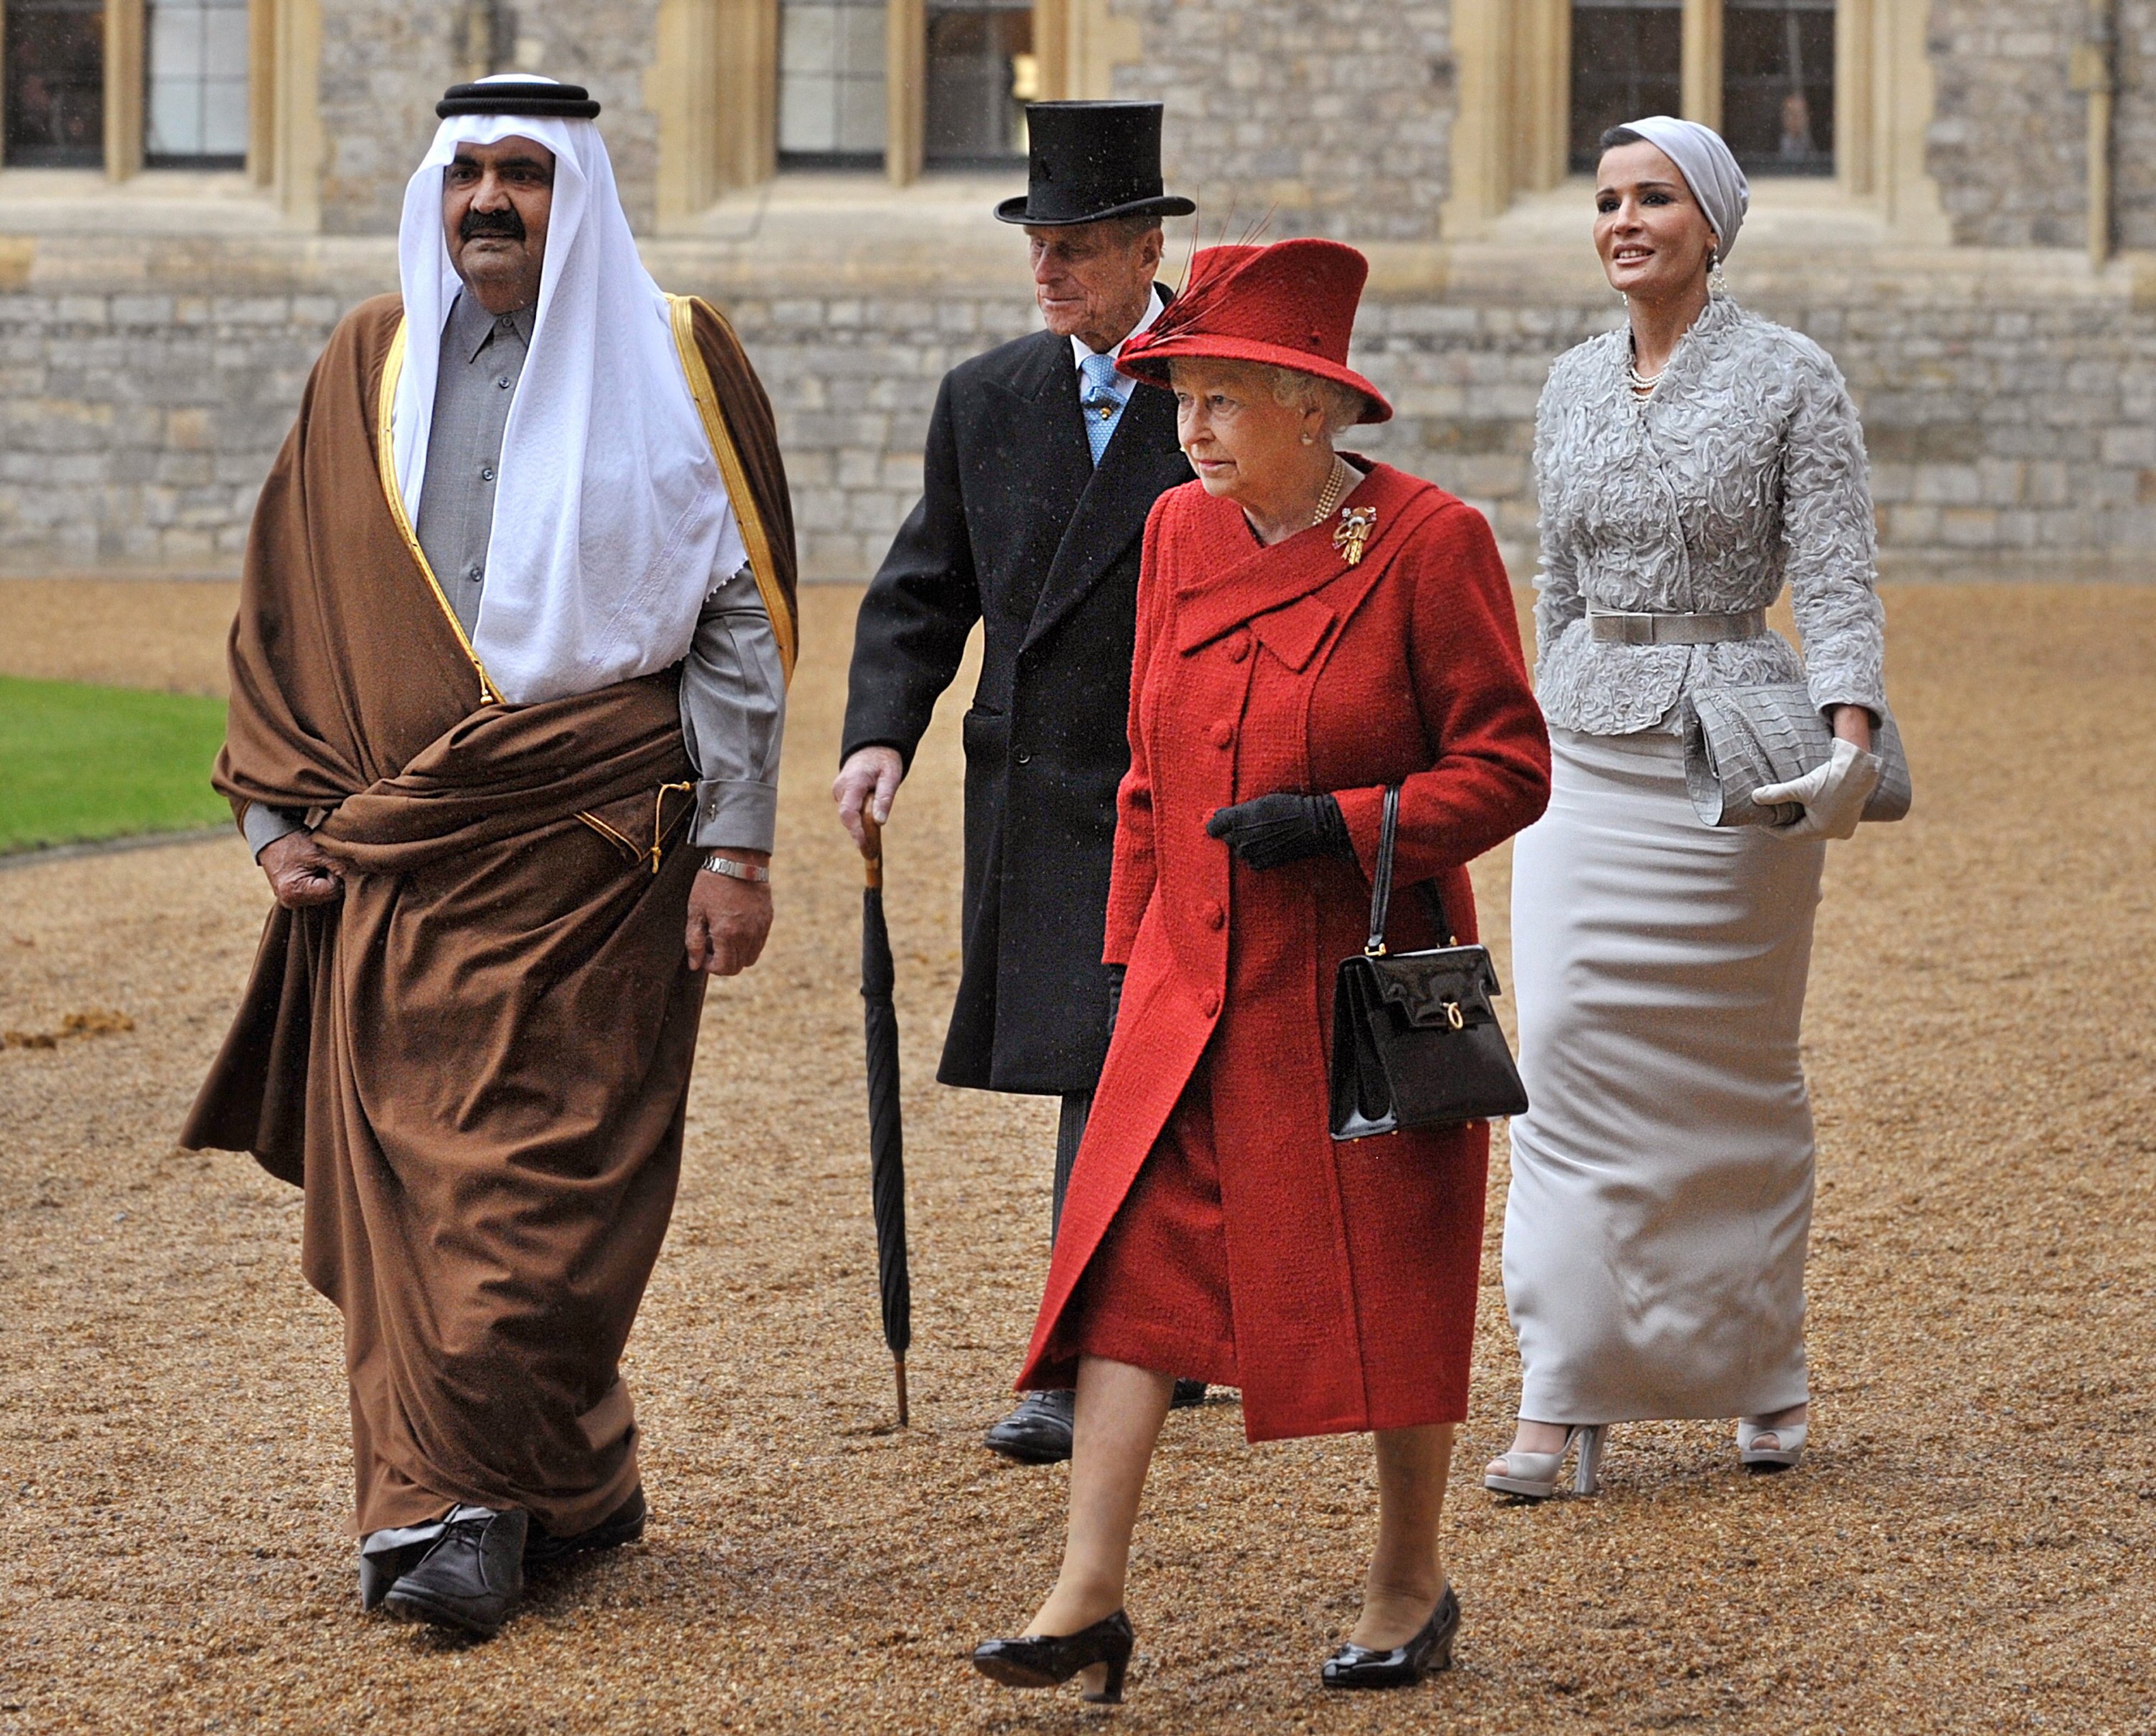 L’ancien émir du Qatar, le cheikh Hamad ben Khalifa al-Thani et son épouse Mozah marchent avec la reine Elizabeth II et son mari le prince Philip au château de Windsor en octobre 2010 (AFP)